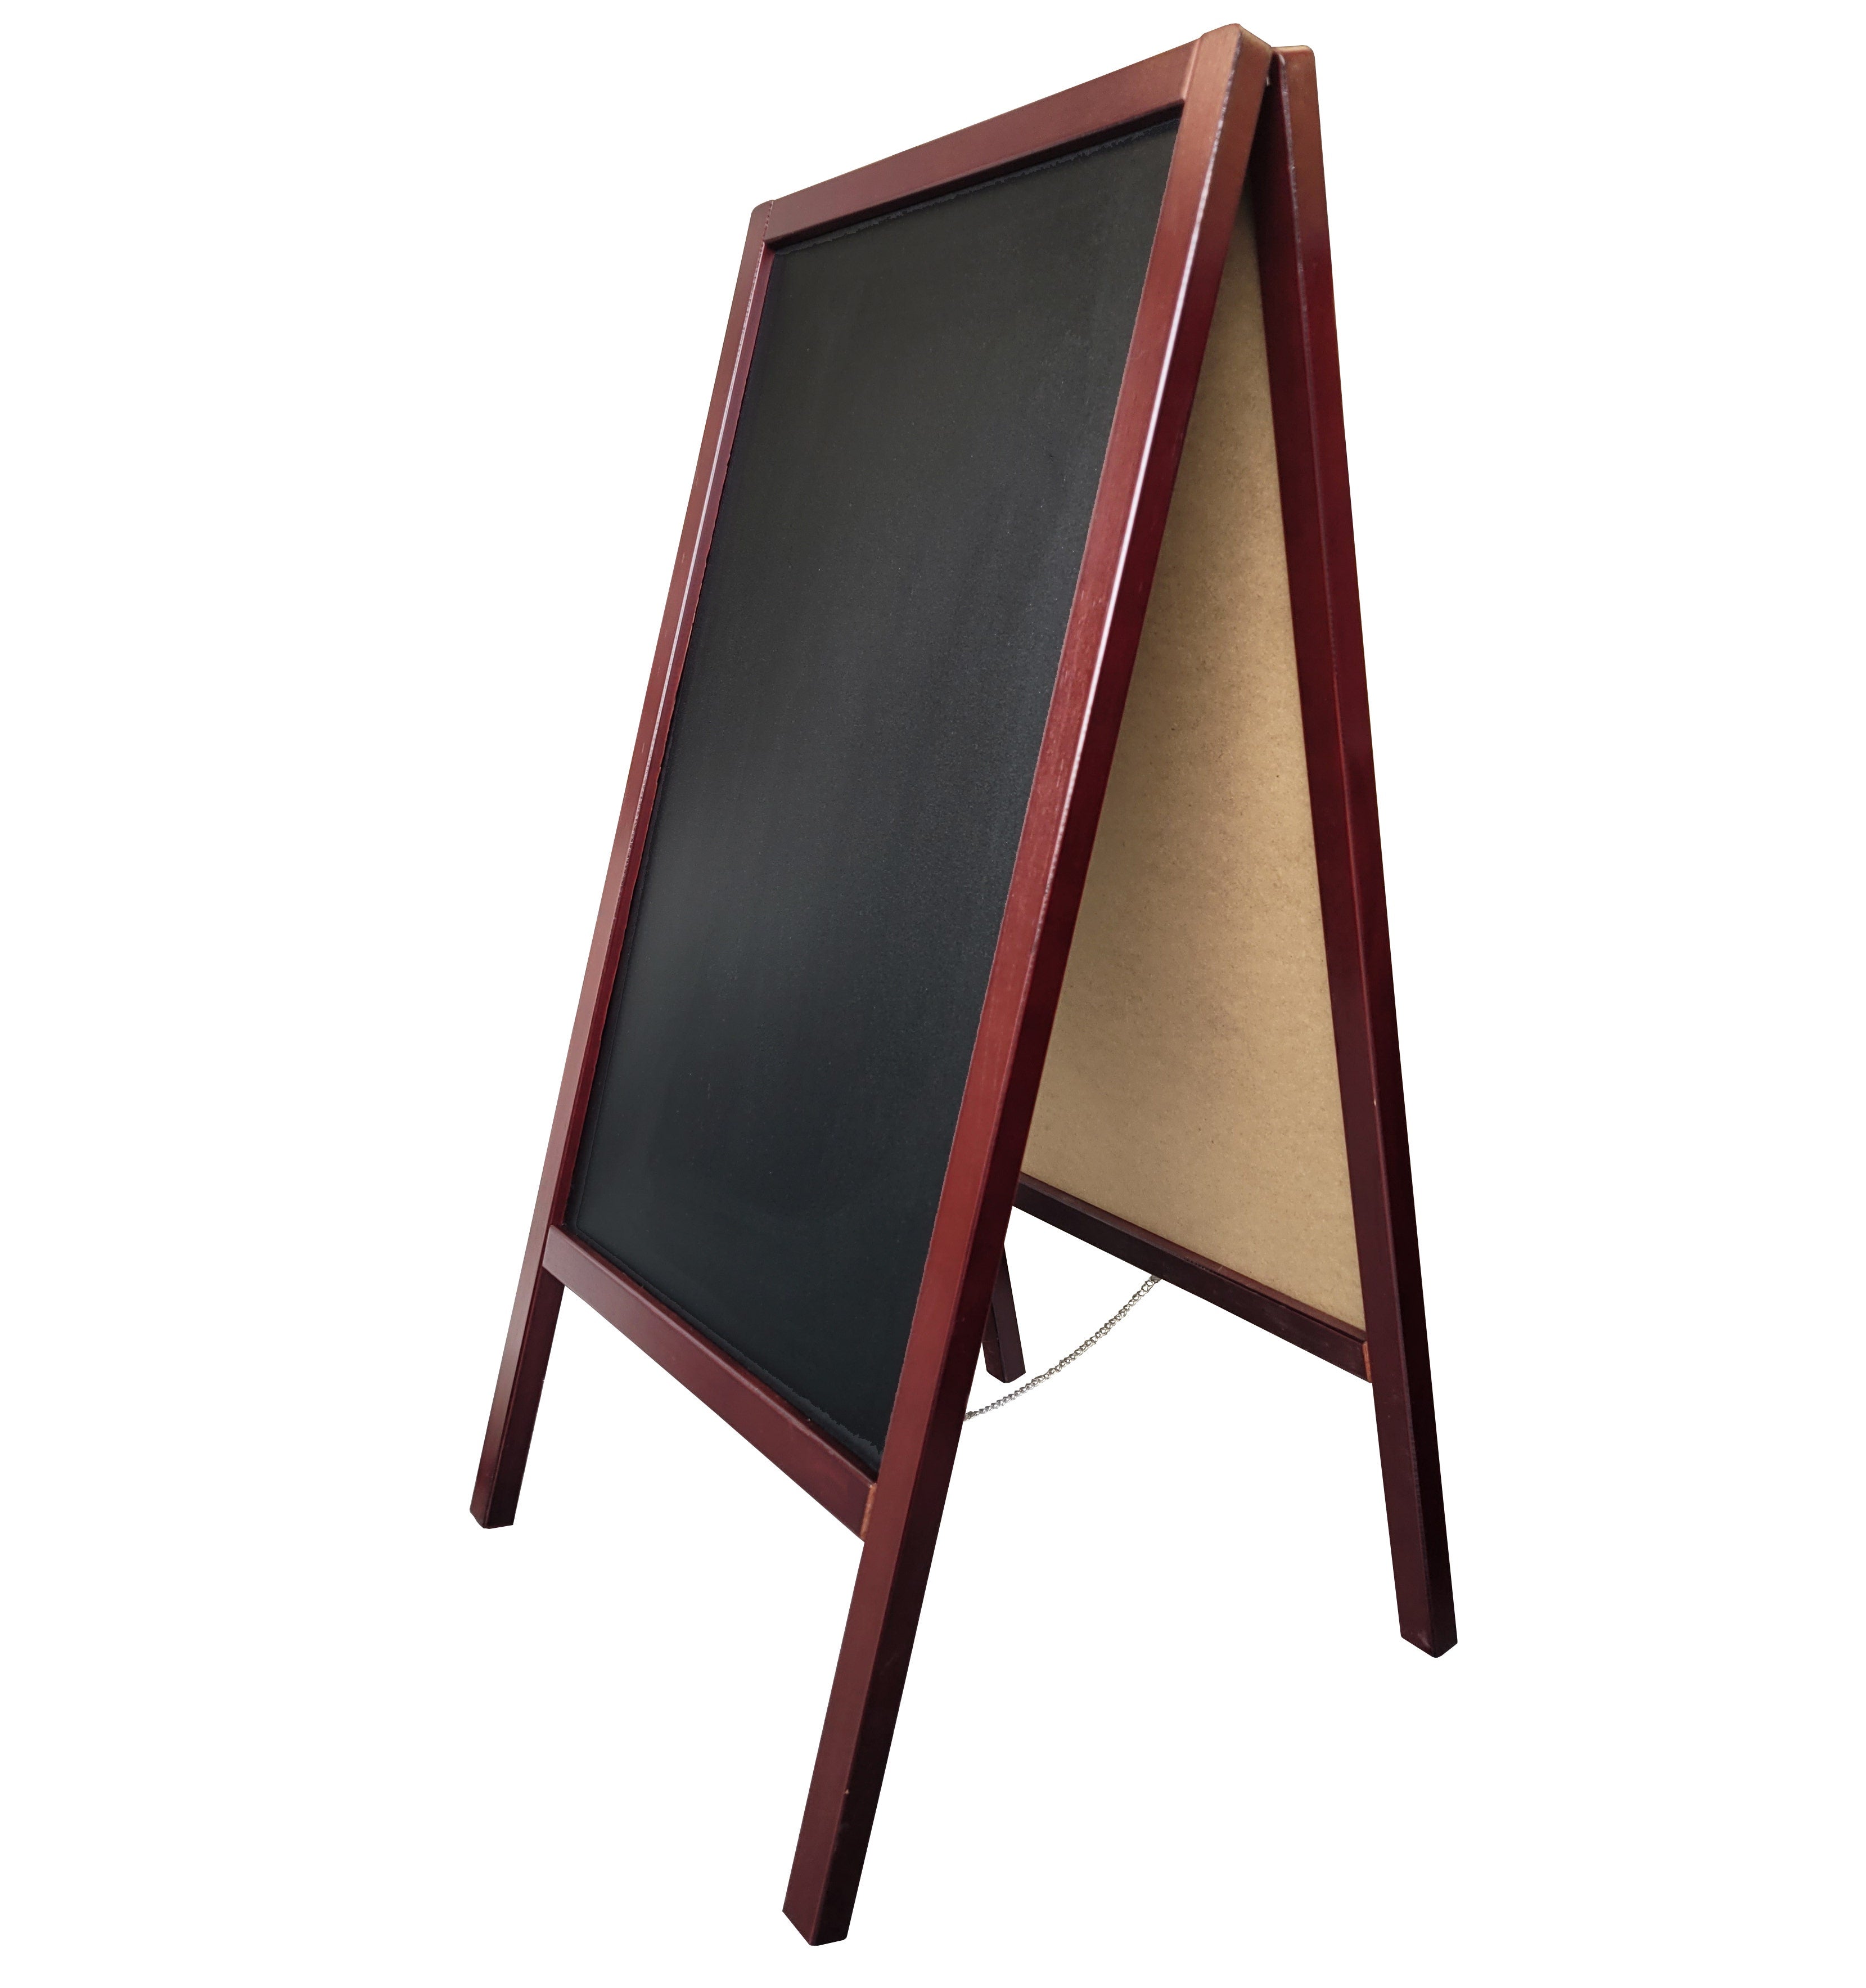 Tableau de marquage en bois avec cadre en A